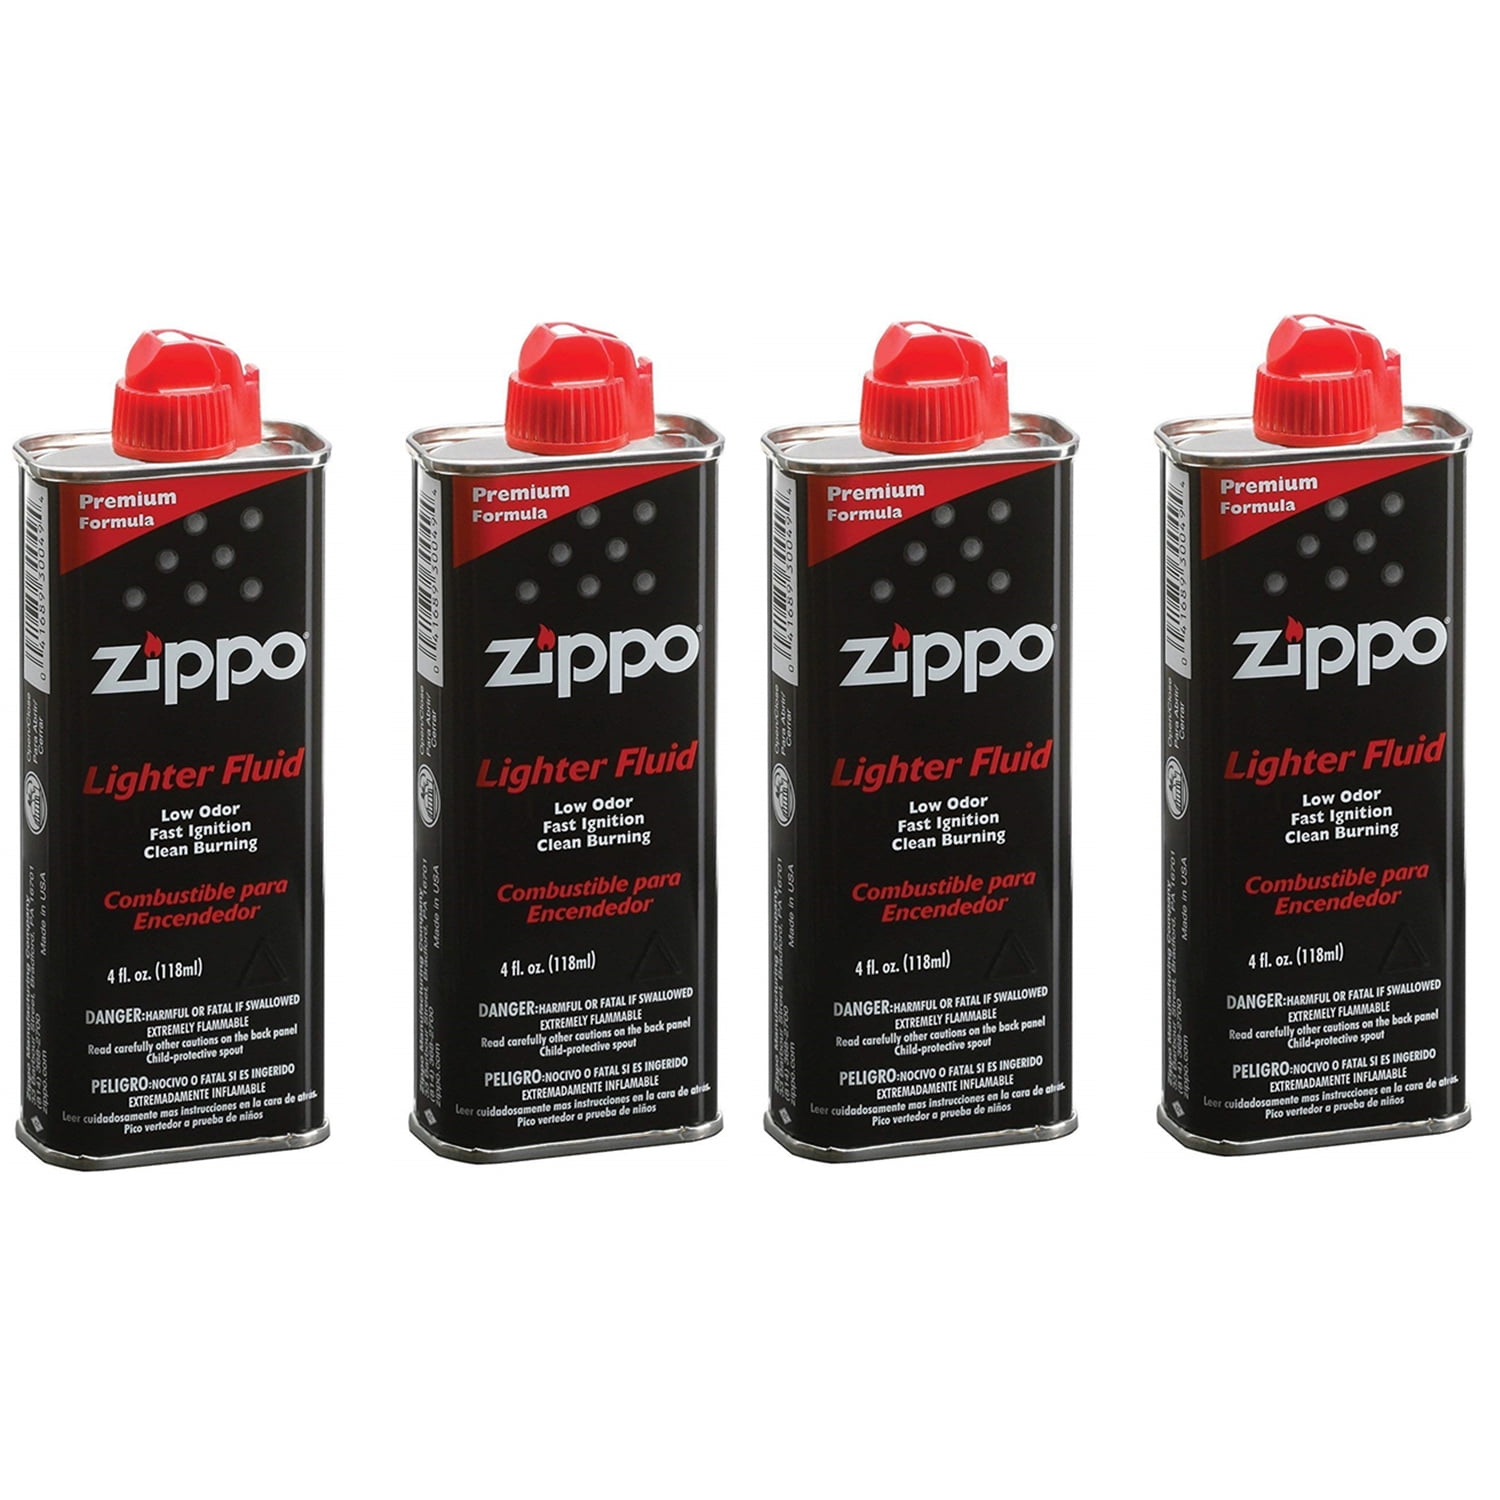 ZIPPO 4oz Lighter Fluid 2 Flint card 1 wick 